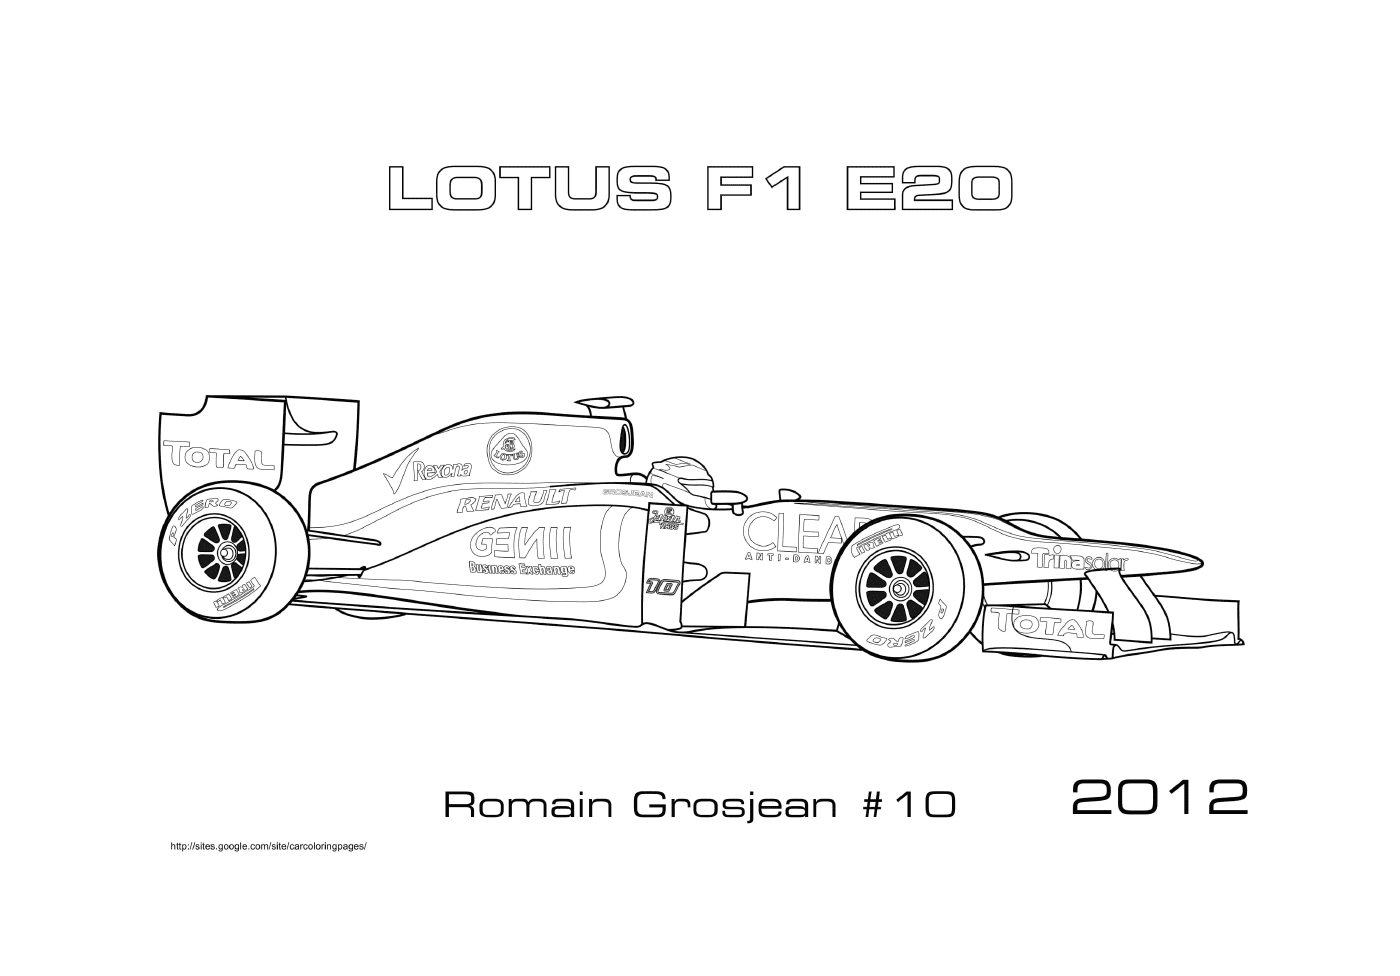  Lotus E20 Lotus E20 Romain Grosjean 2012,2012年,公式1车 